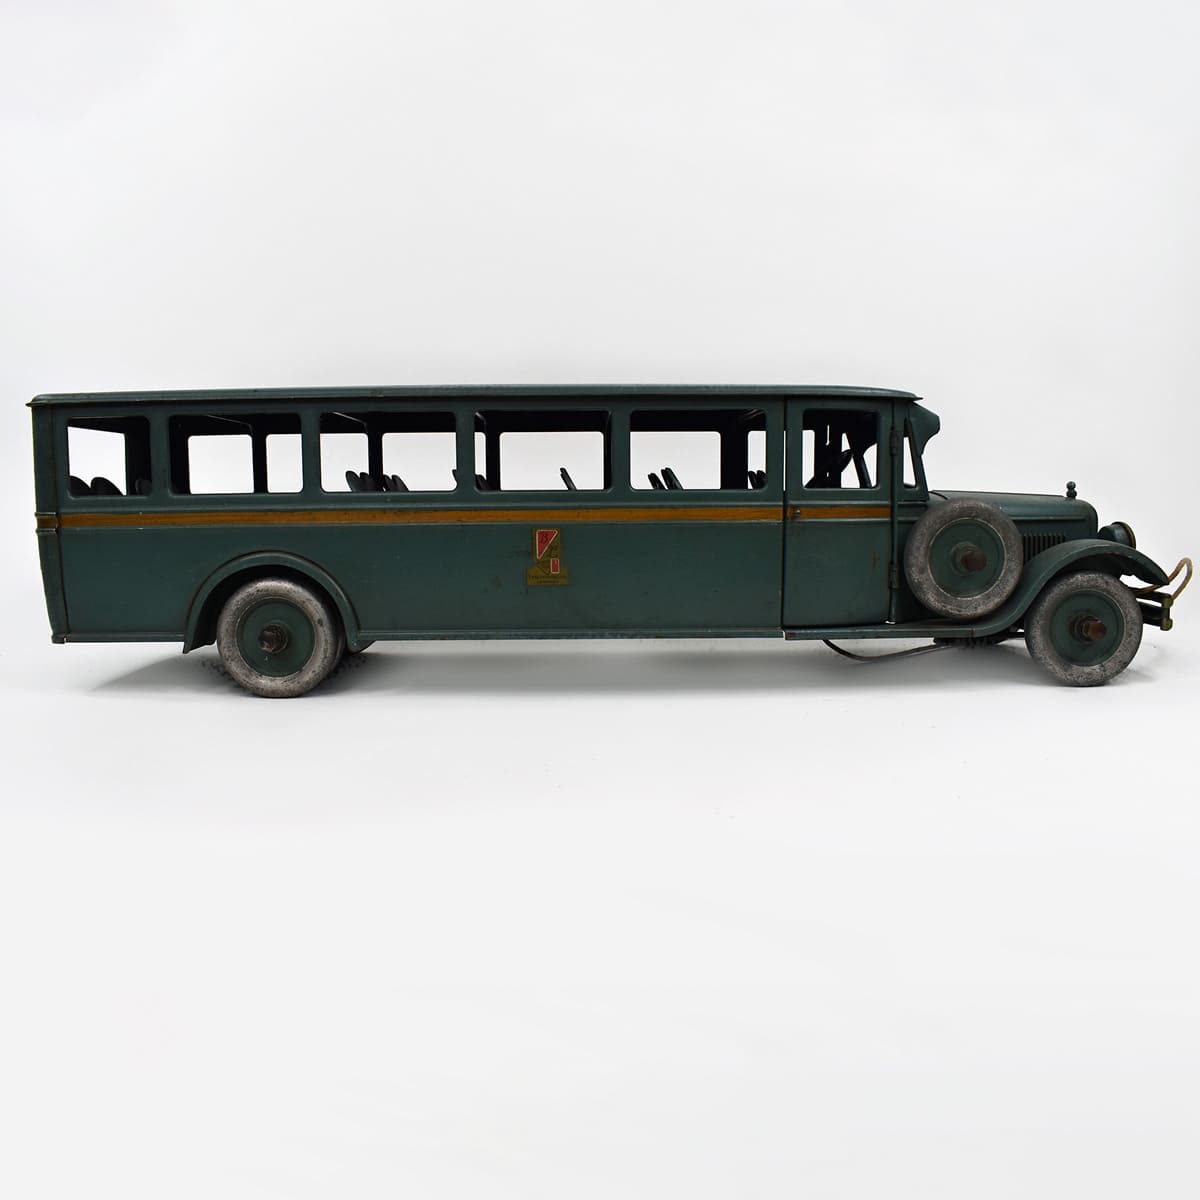 Antique VTG Original 1920's Buddy L No 208 Passenger Coach